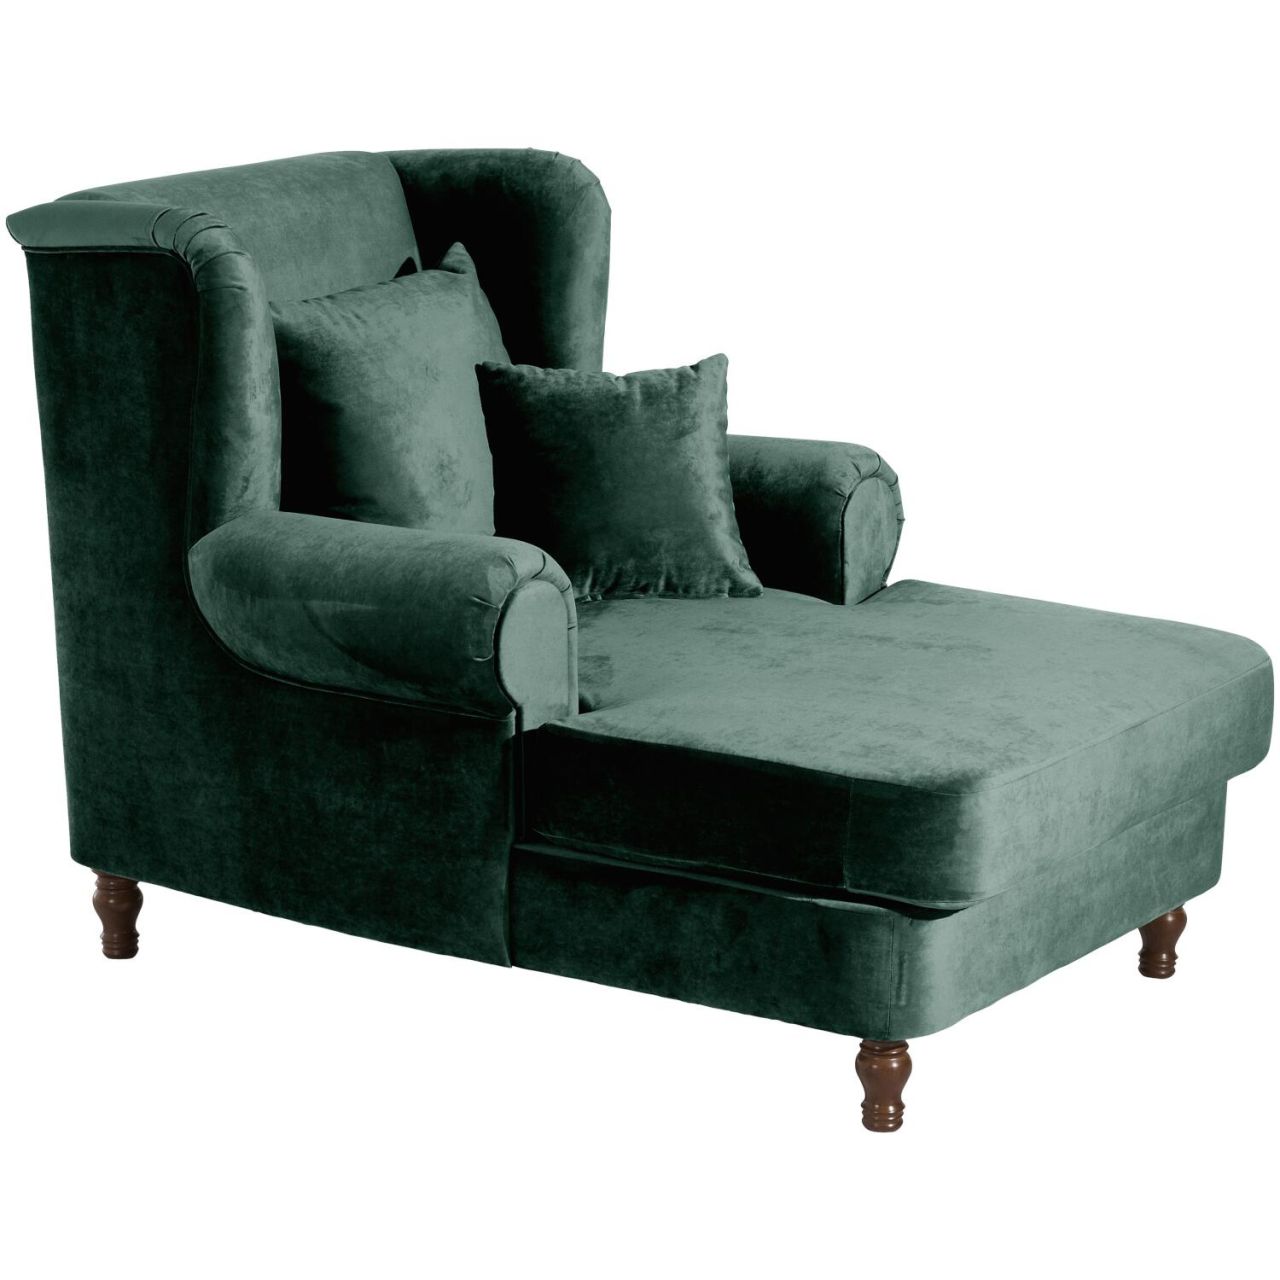 Big-Sessel inkl. 2x Zierkissen 55x55cm + 40x40cm Mareille anthrazit Buche schwarz lackiert Flachgewebe (Leinenoptik)